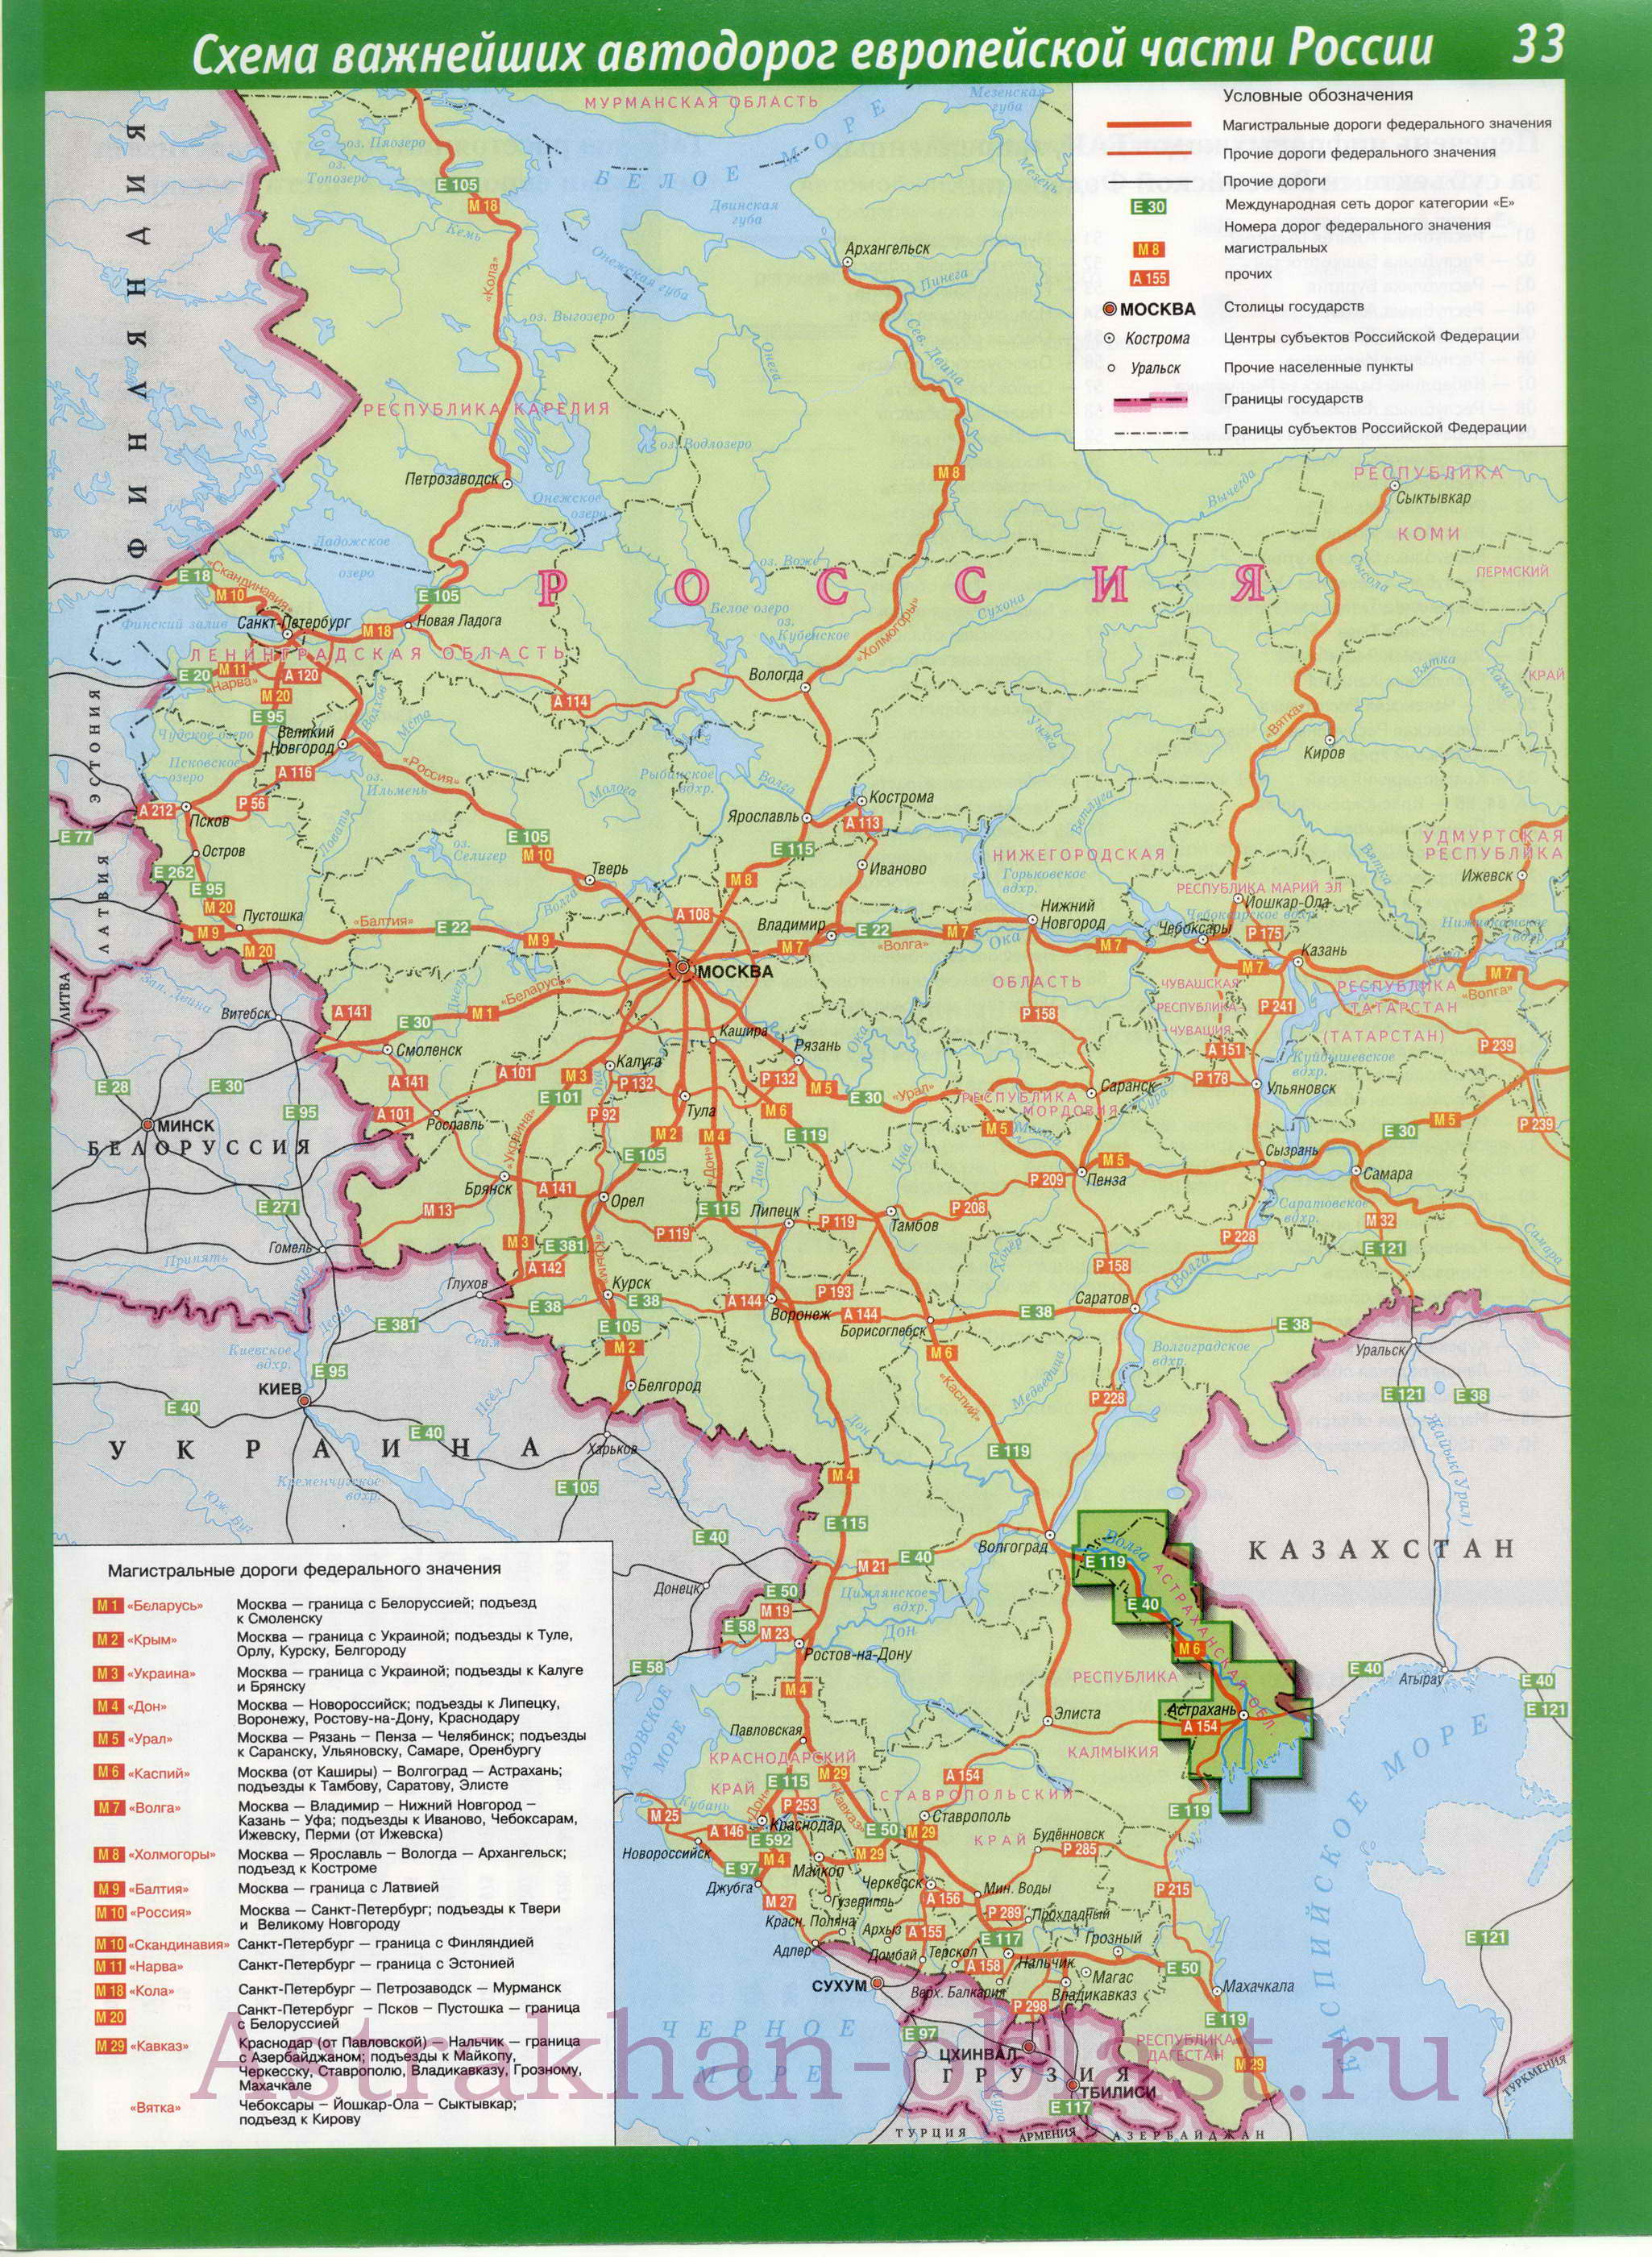  Карта дорог России. Карта схема важнейших автодорог европейской части России, A0 - 